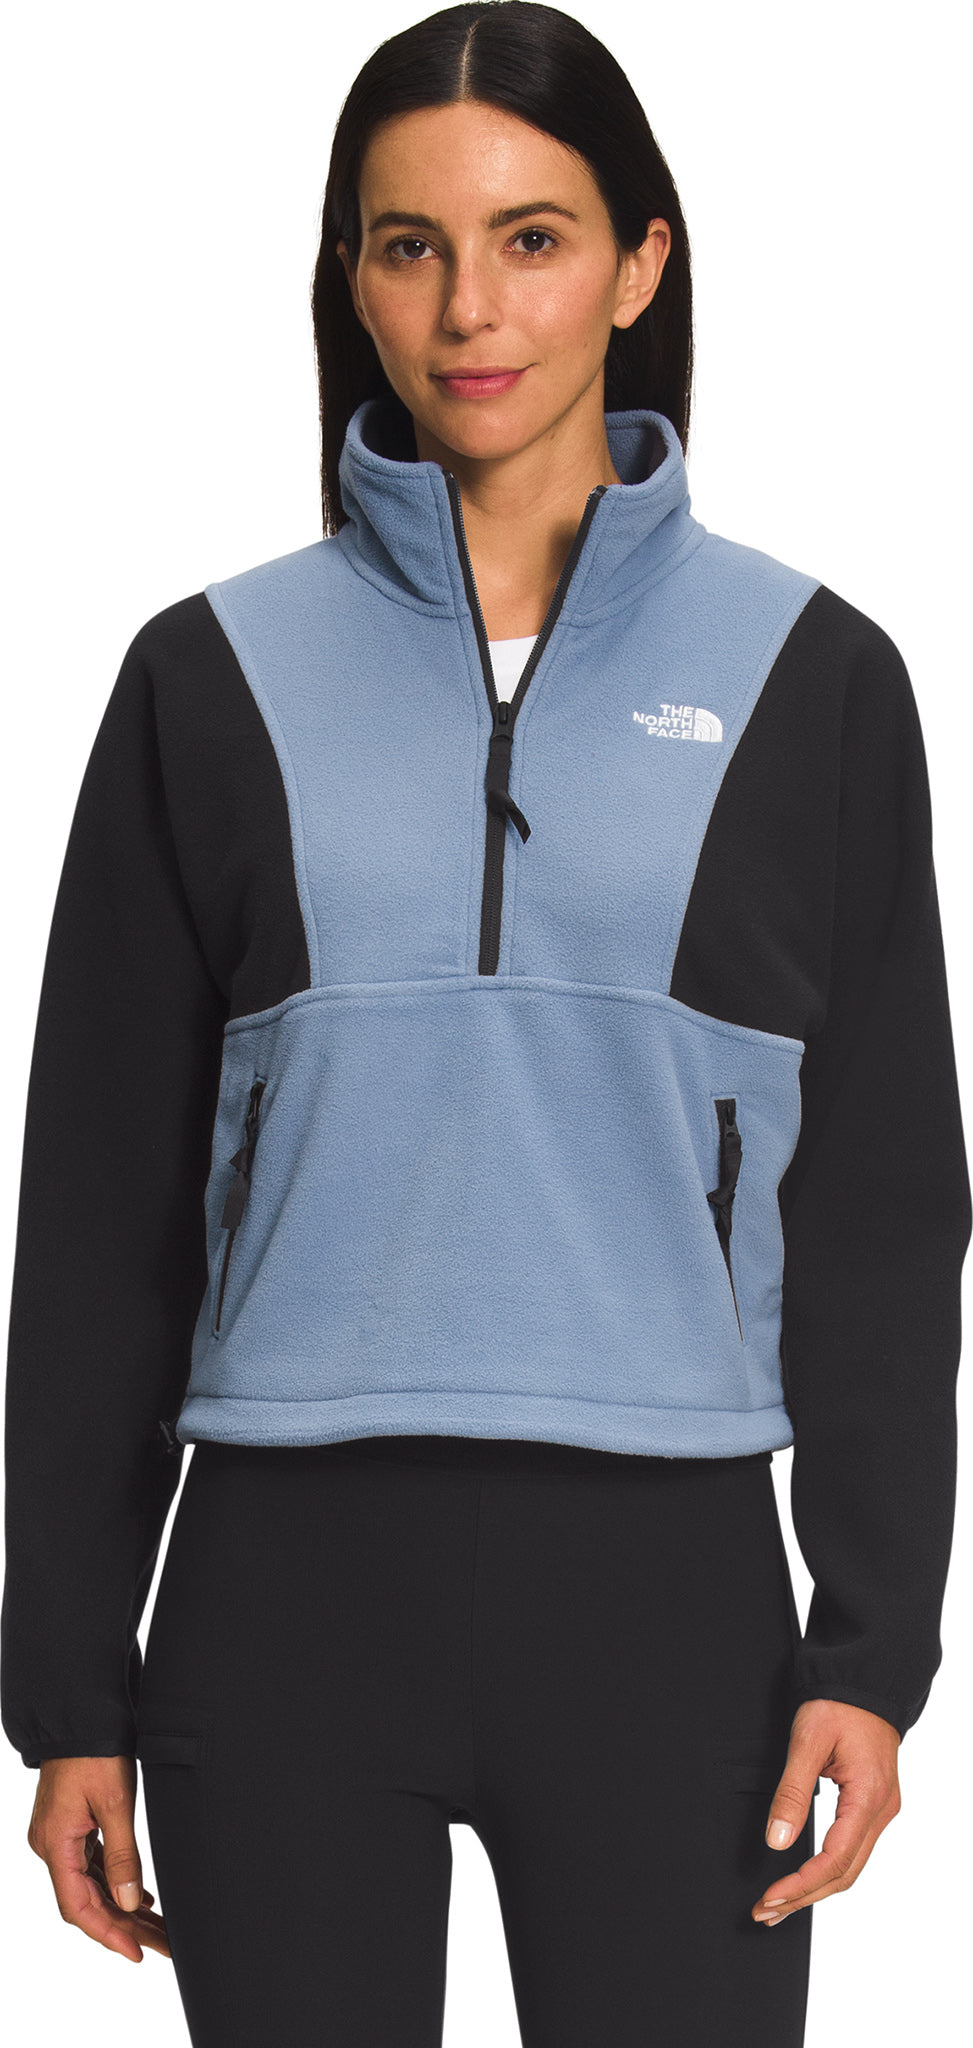 The North Face Fleece Zip Up Sweatshirt Women's Size Large